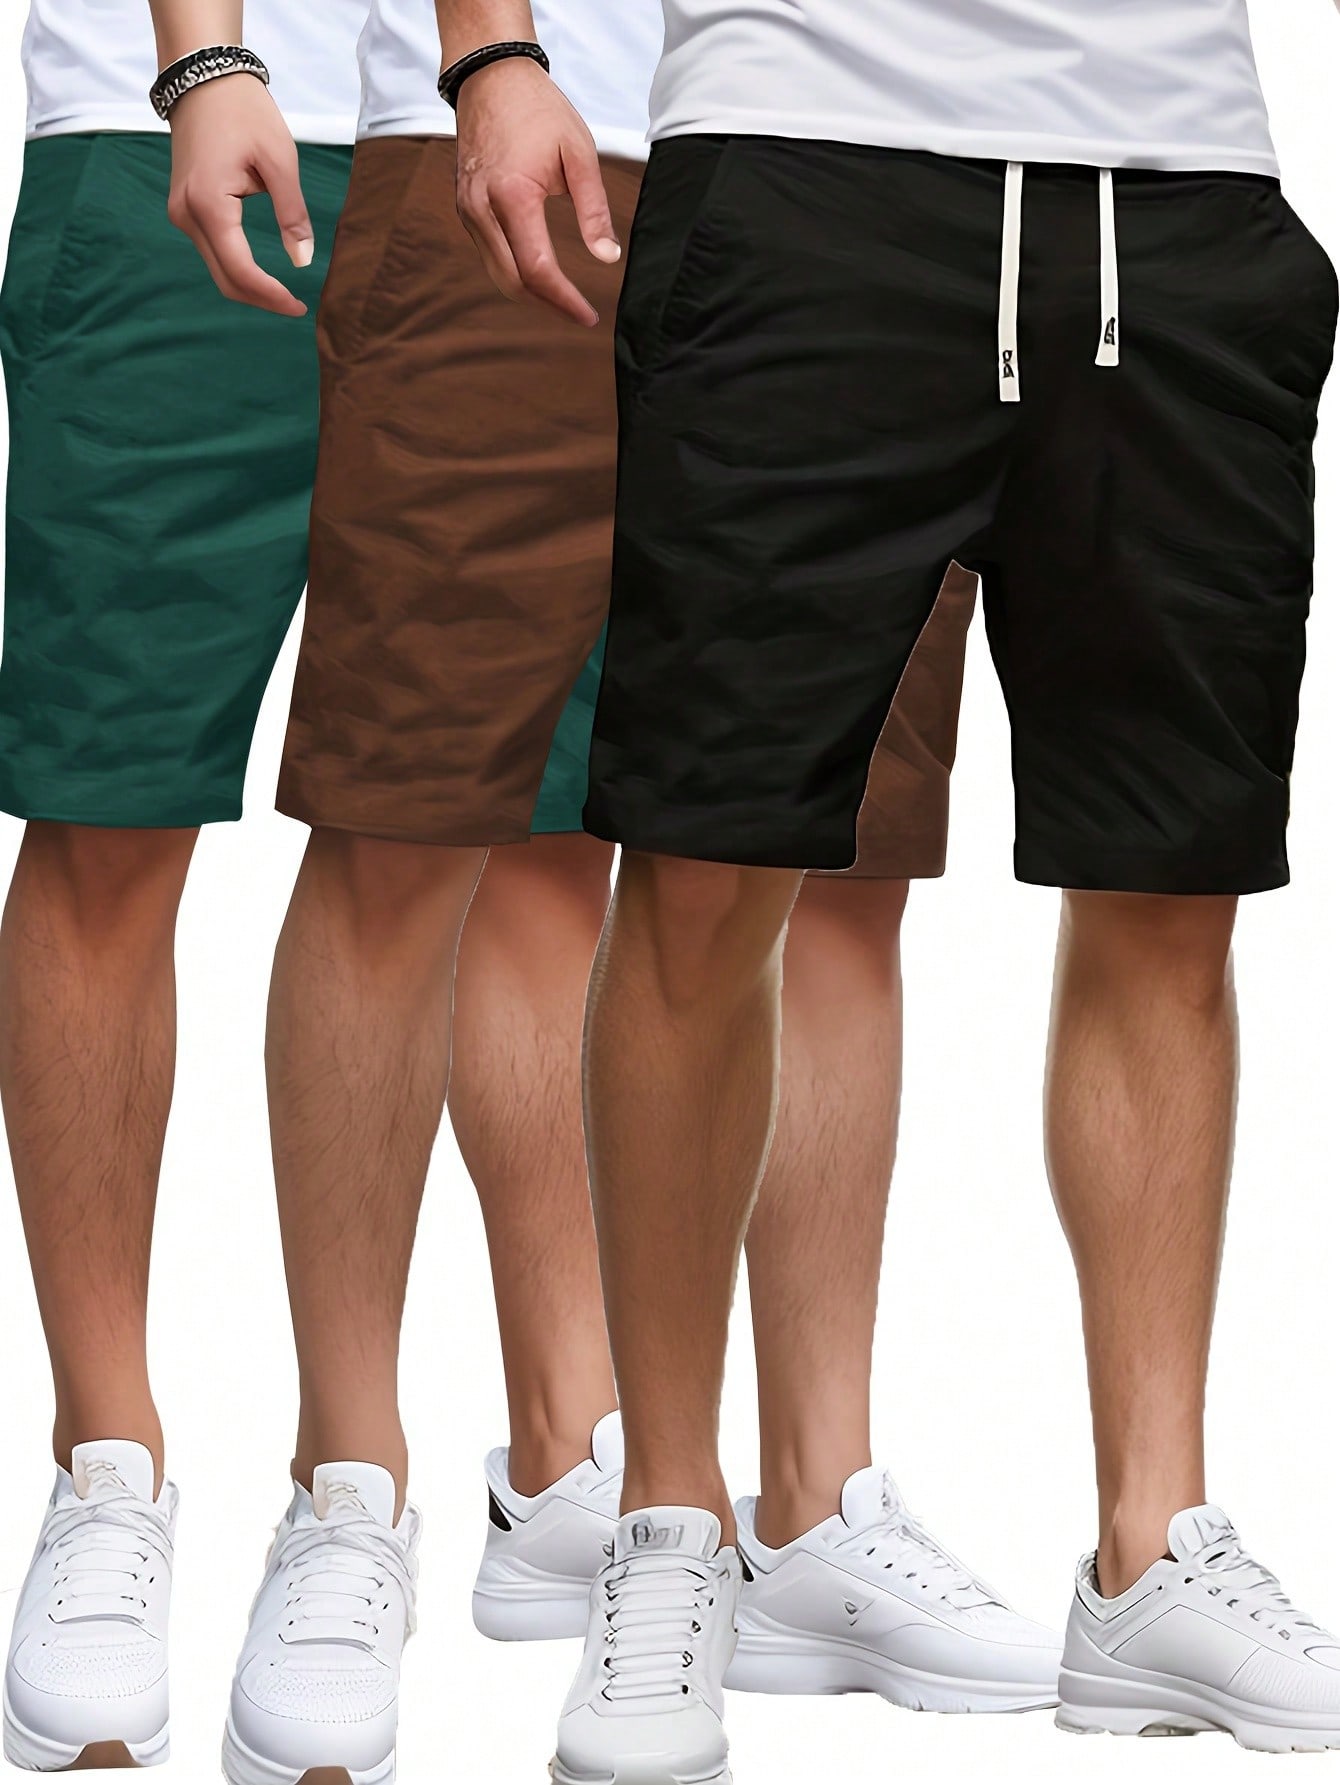 3 шт./компл. летние мужские однотонные шорты с эластичной резинкой на талии, многоцветный шорты мужские спортивные быстросохнущие модные тонкие бермуды для бодибилдинга и фитнеса летние повседневные пляжные шорты